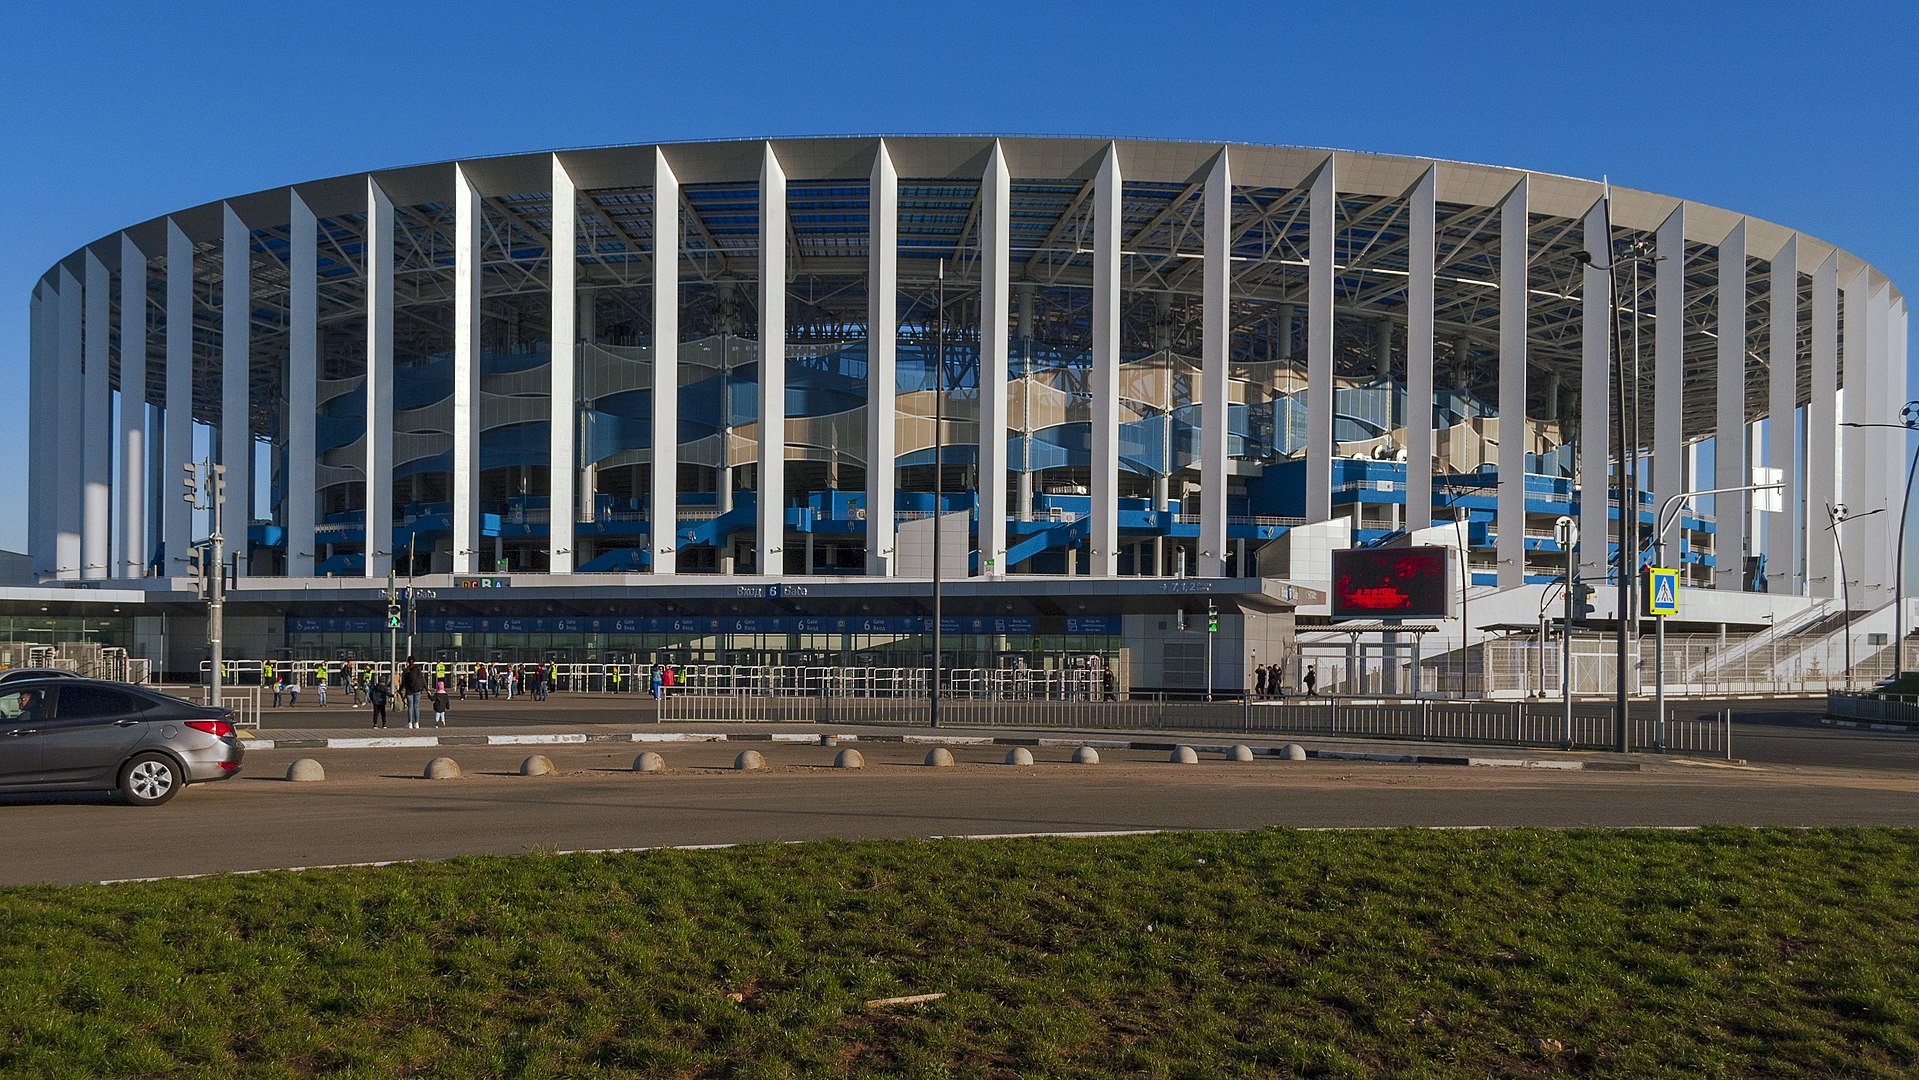 Arena Нижний Новгород